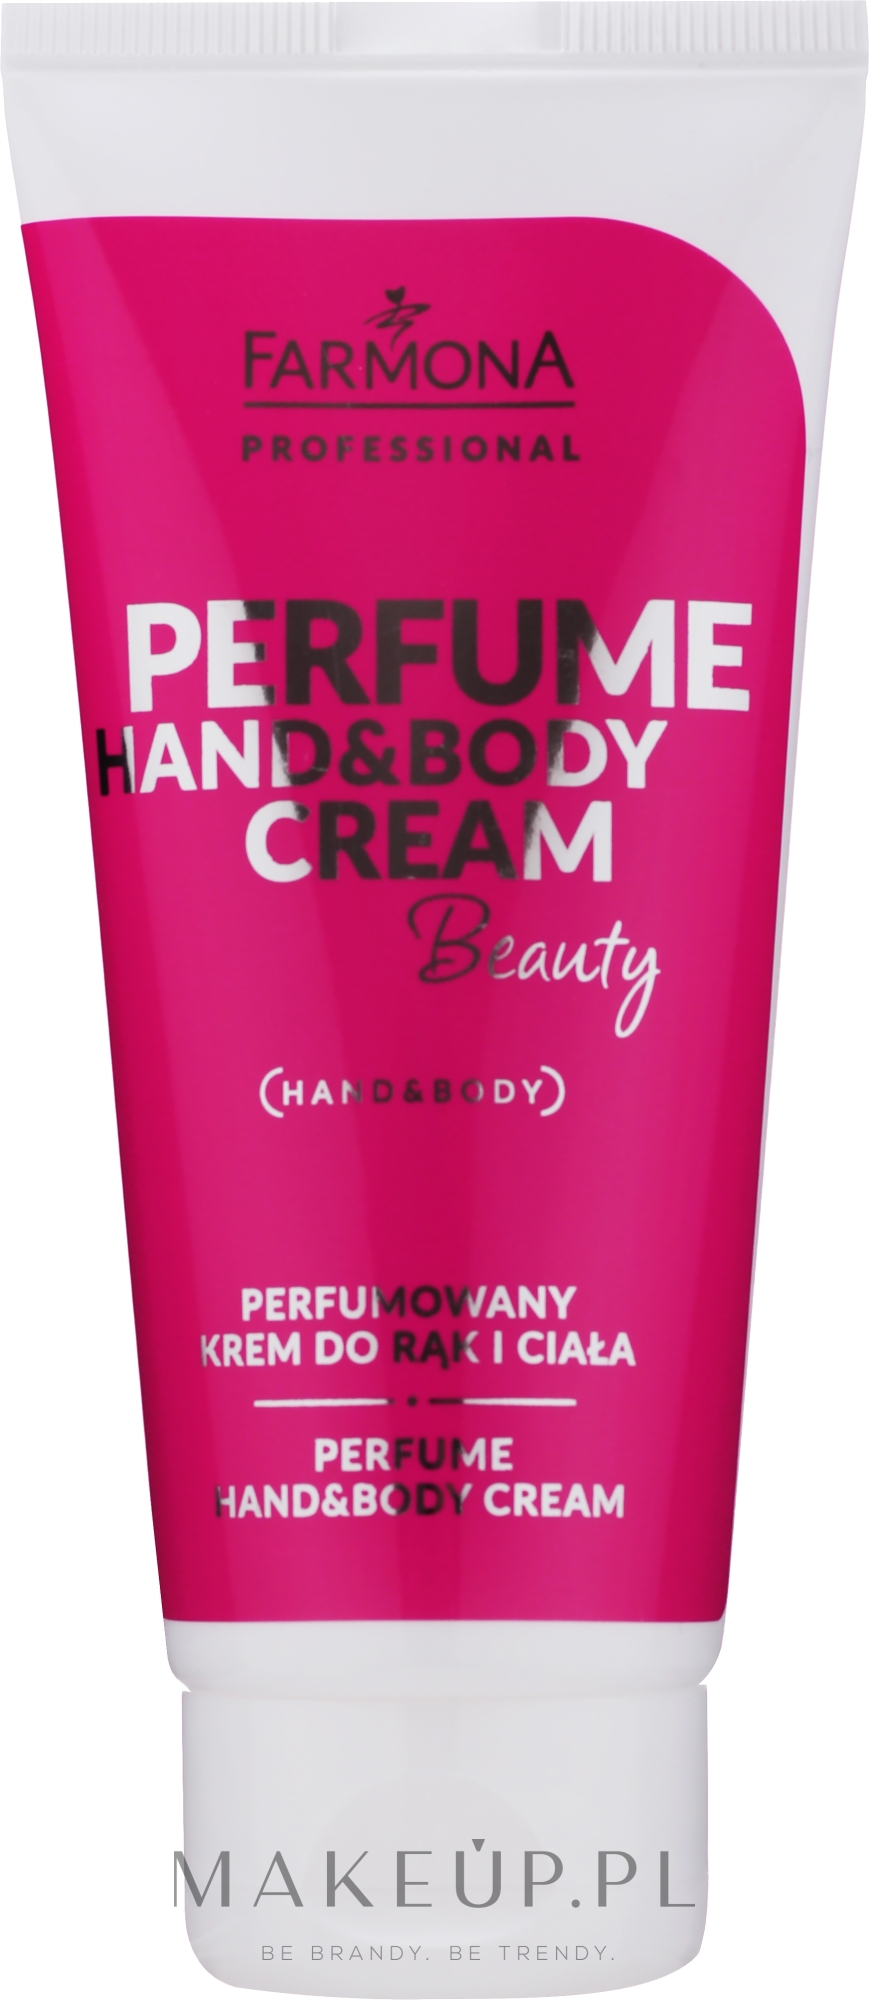 Perfumowany krem do rąk i ciała - Farmona Professional Perfume Hand&Body Cream Beauty — Zdjęcie 75 ml